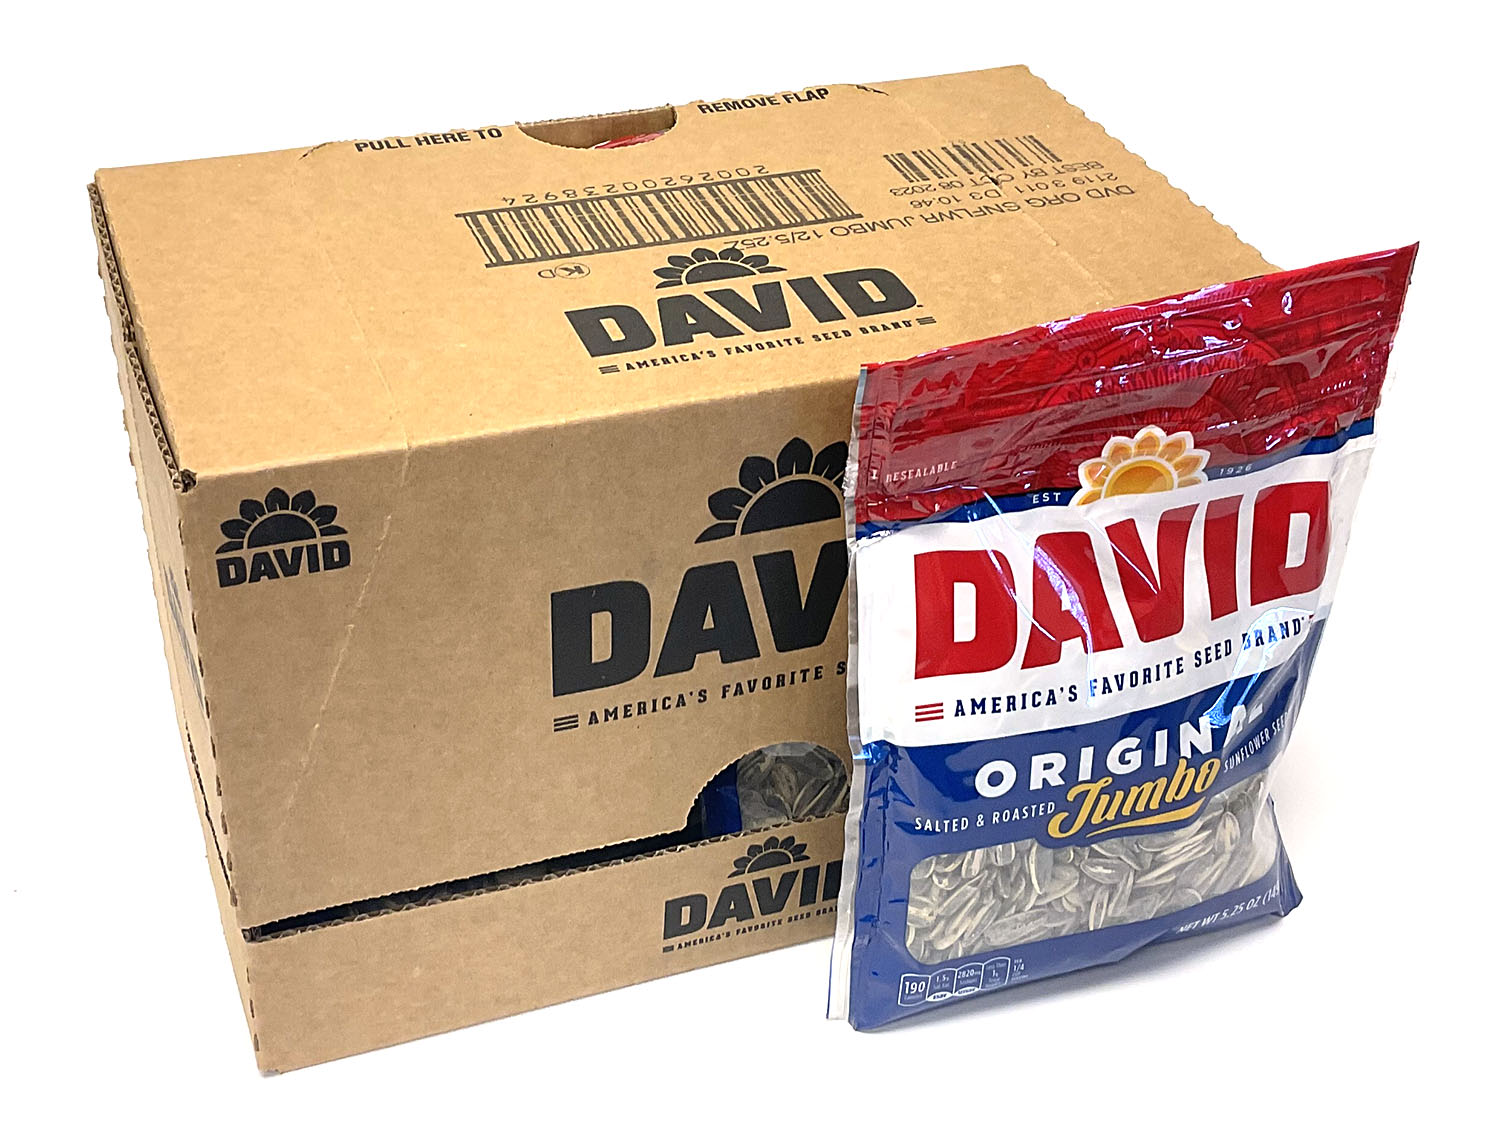 David Sunflower Seeds - Original - 5.25 oz bag - box of 12